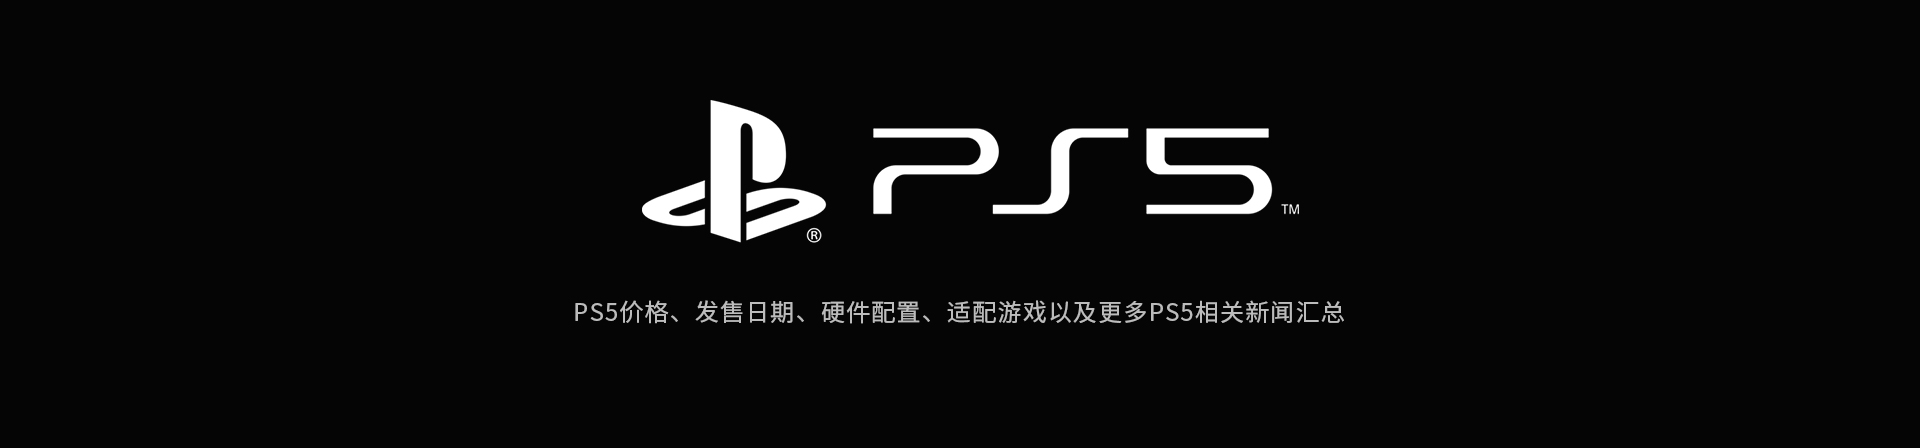 PS5价格、发售日期、硬件配置、适配游戏以及PS5新闻汇总-篝火营地